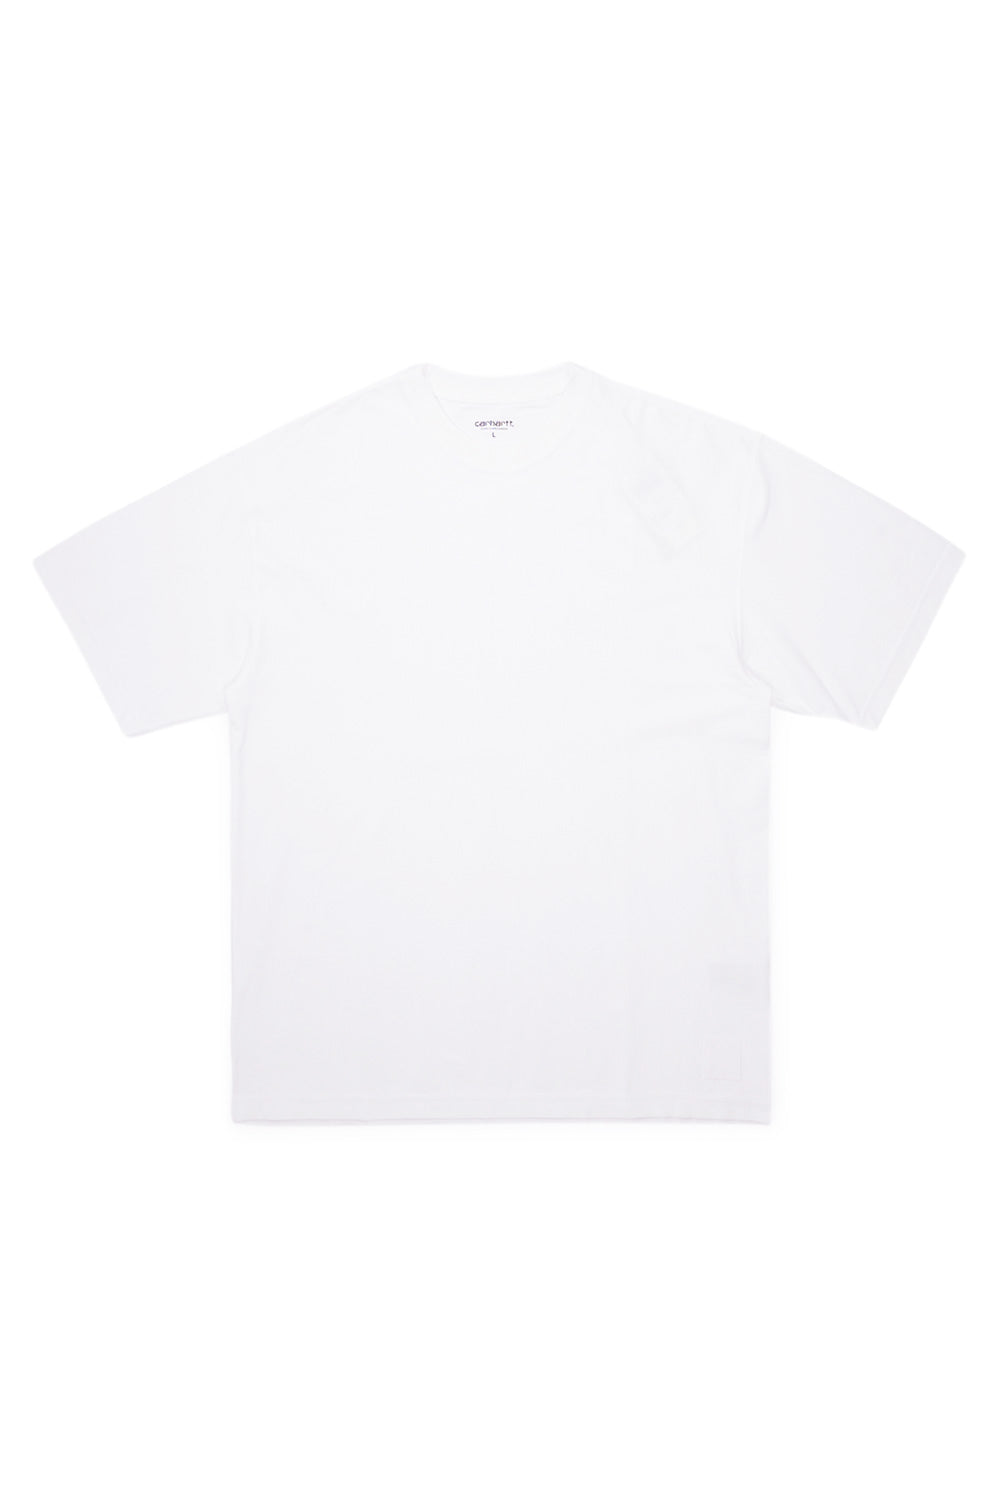 Carhartt WIP Dawson T-Shirt White - BONKERS